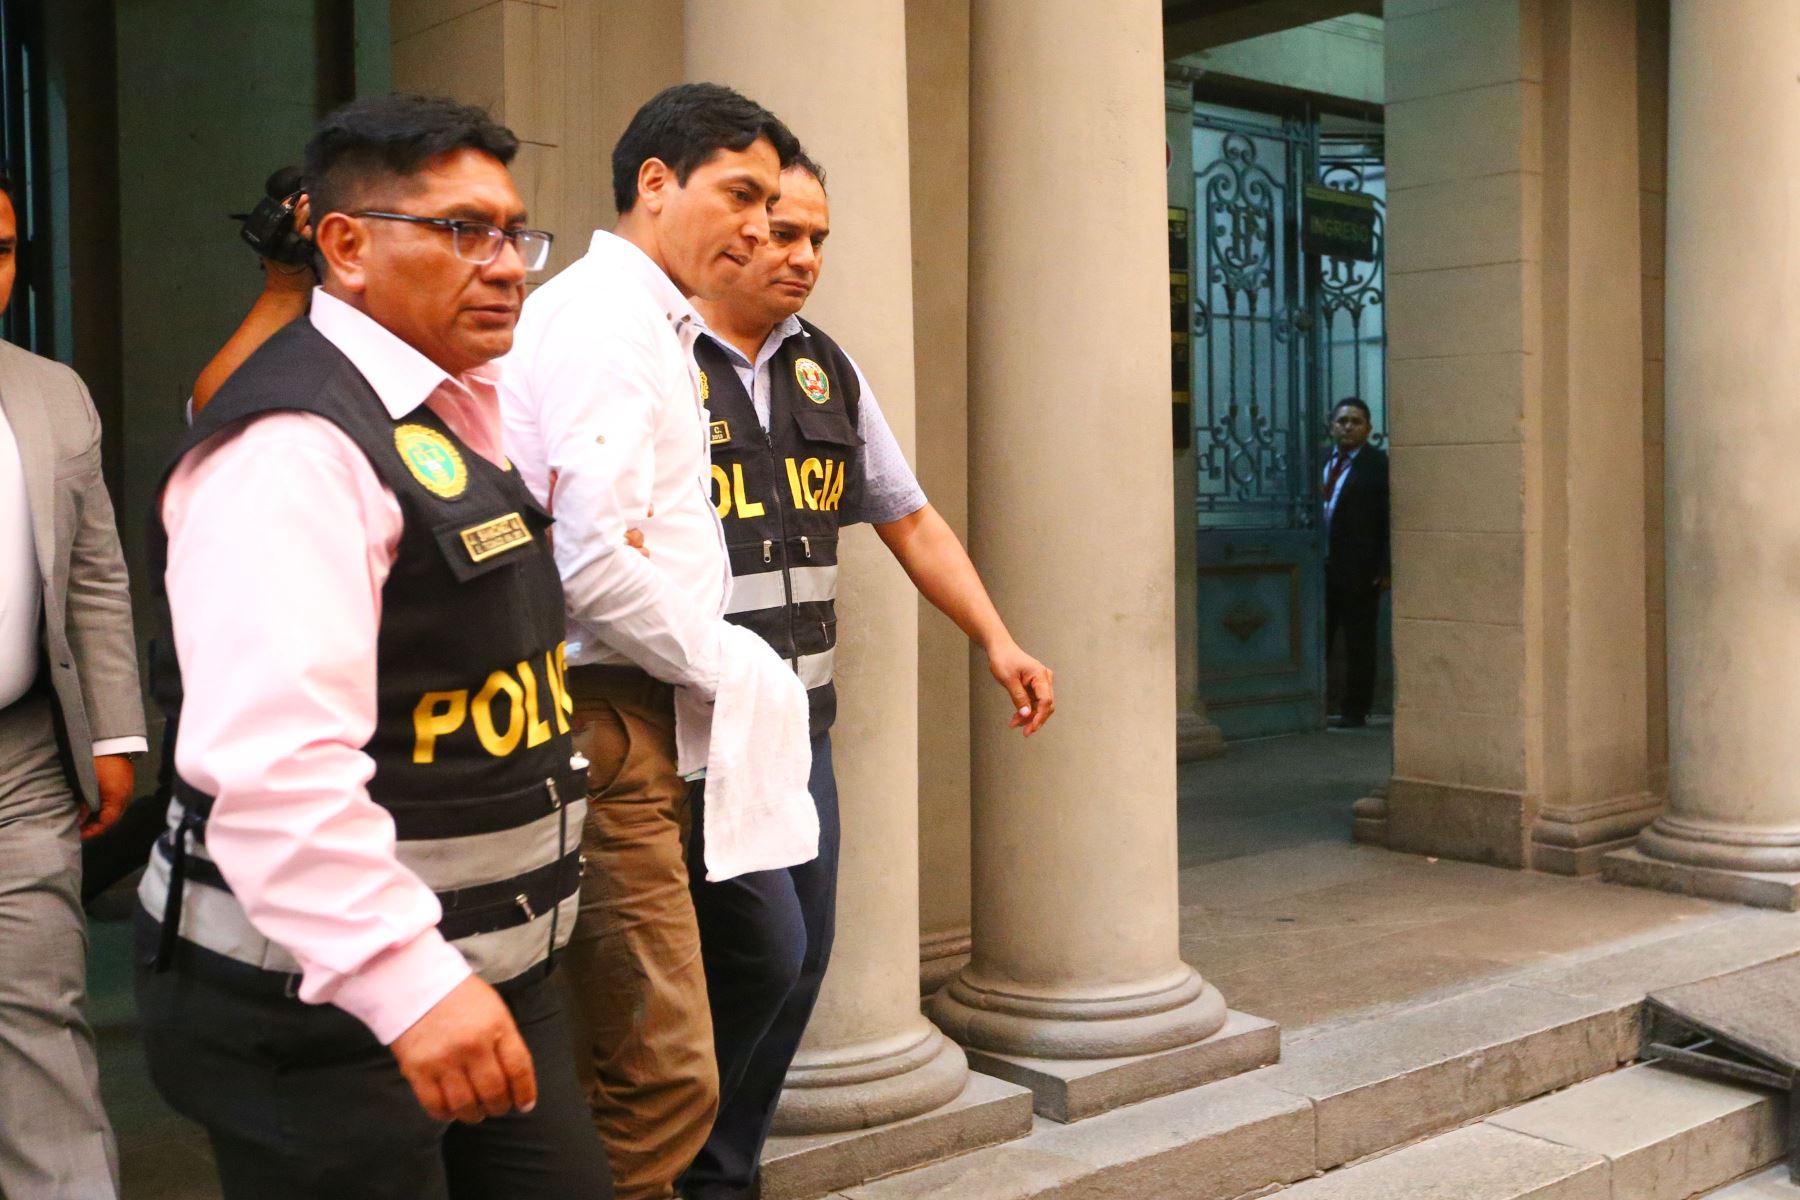 El excongresista Freddy Díaz es investigado por el presunto delito de violación sexual de persona en estado de inconsciencia. Foto: ANDINA/Eddy Ramos